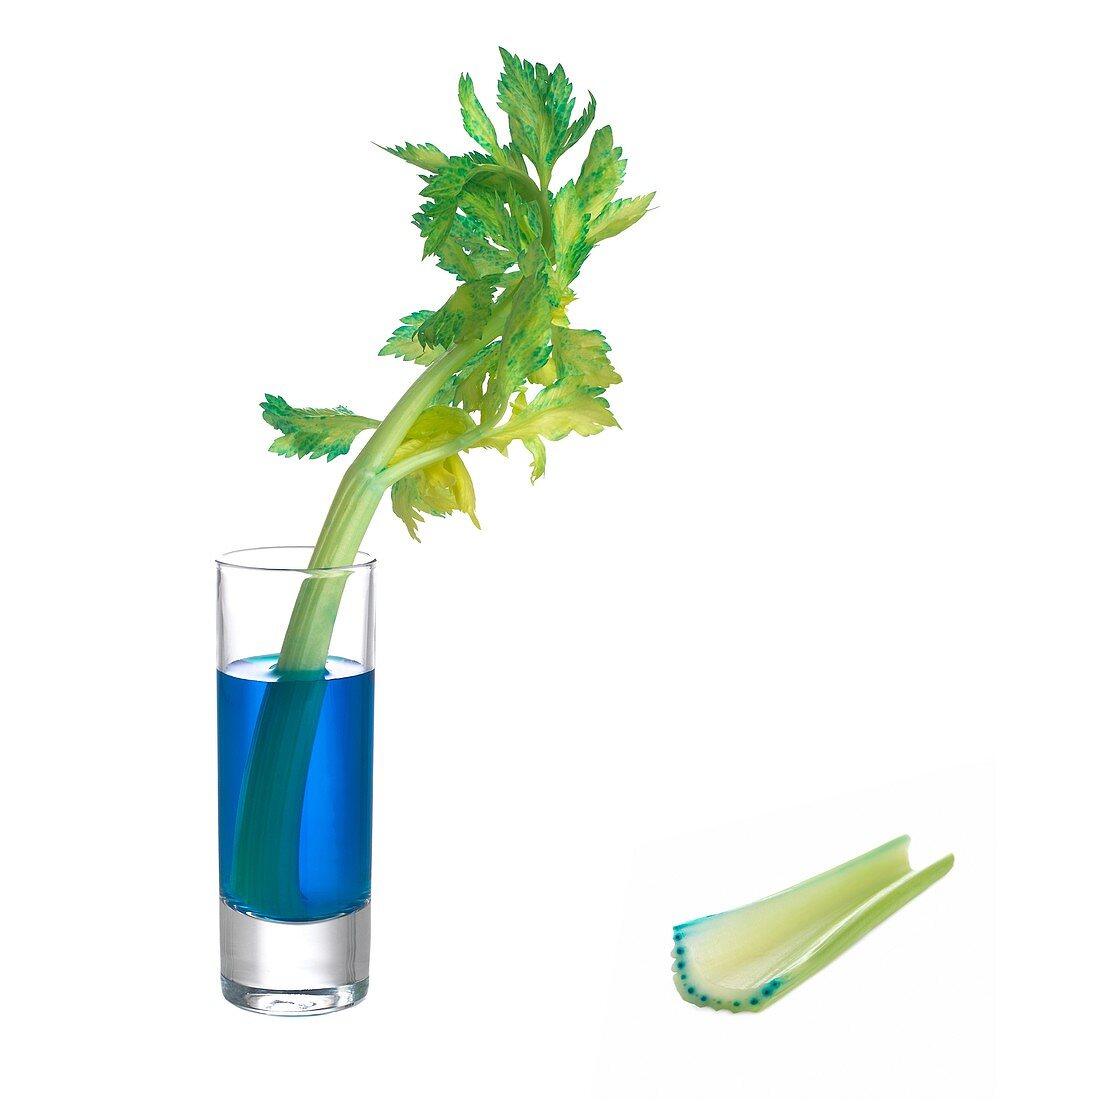 Transpiration in celery stalks